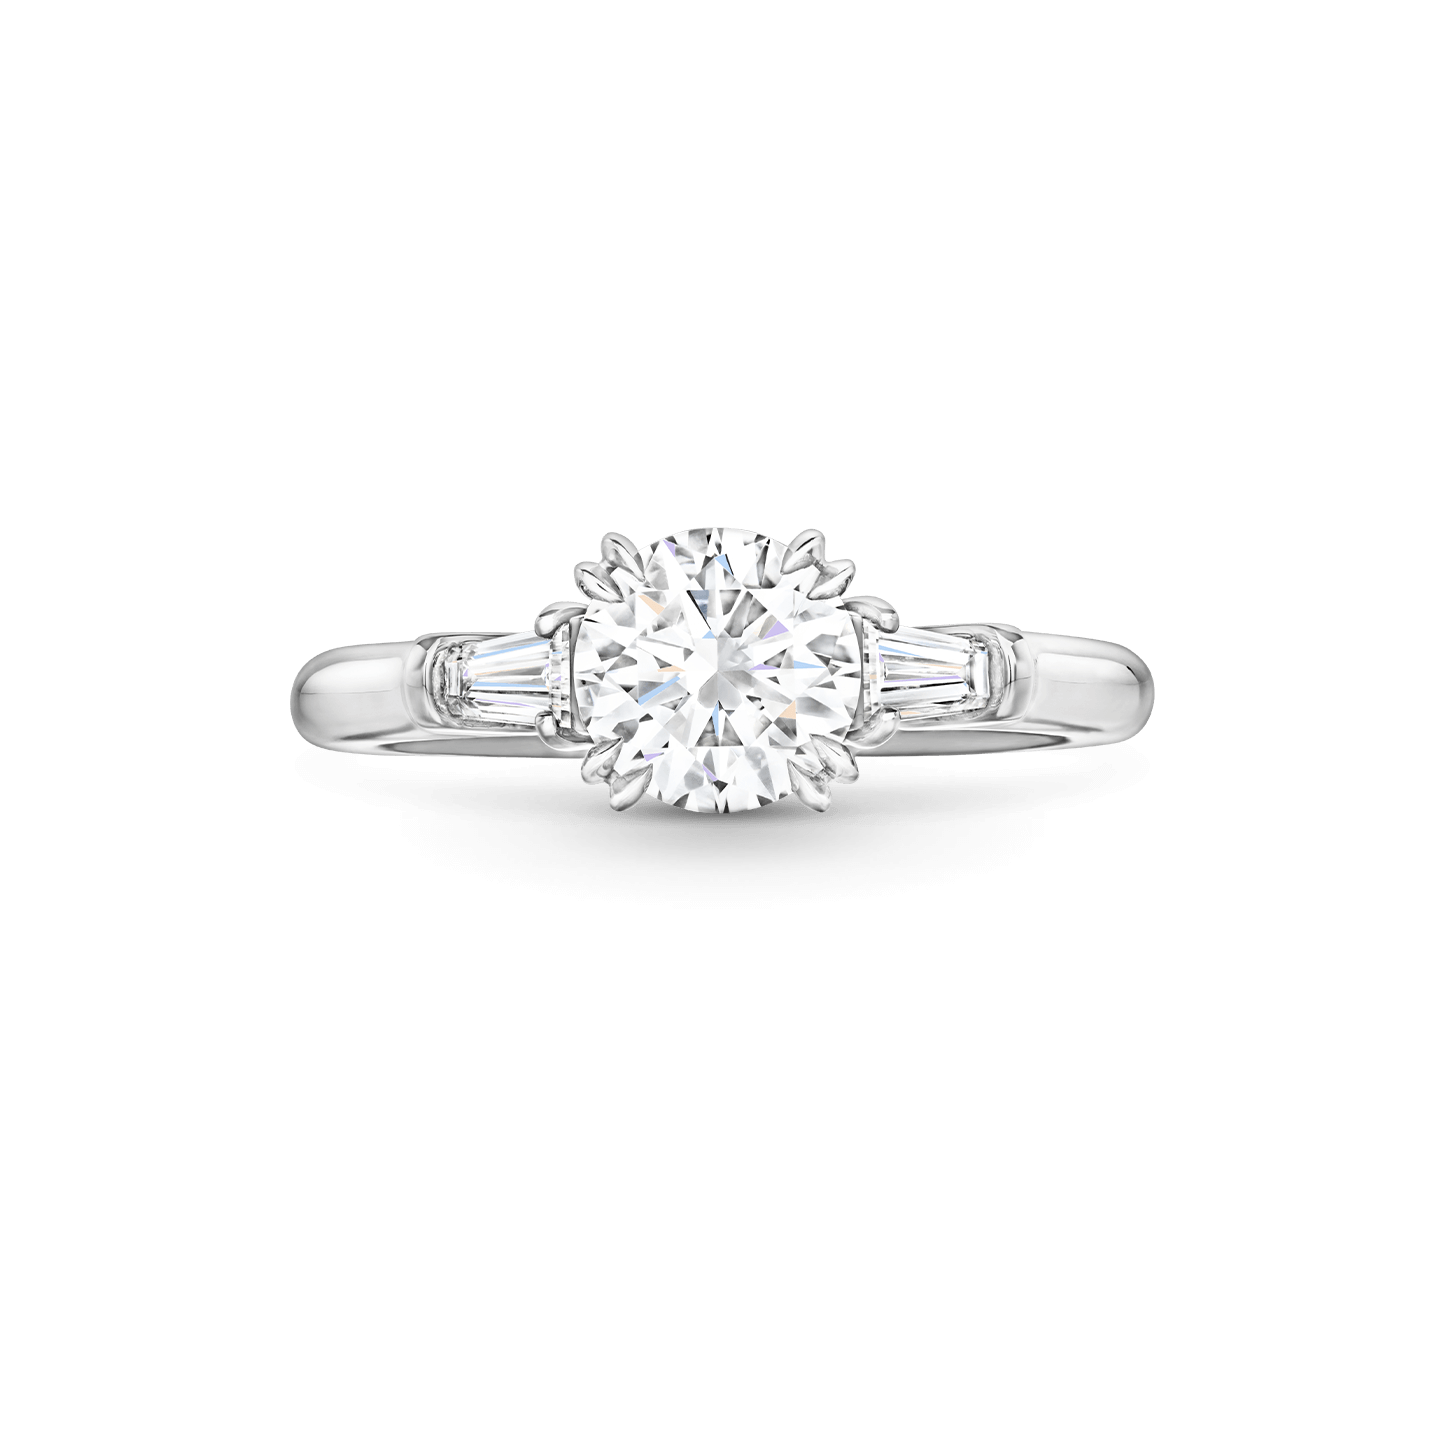 Vue de face de la Bague de fiançailles Classic Winston diamant taille brillant et diamants latéraux taille baguette